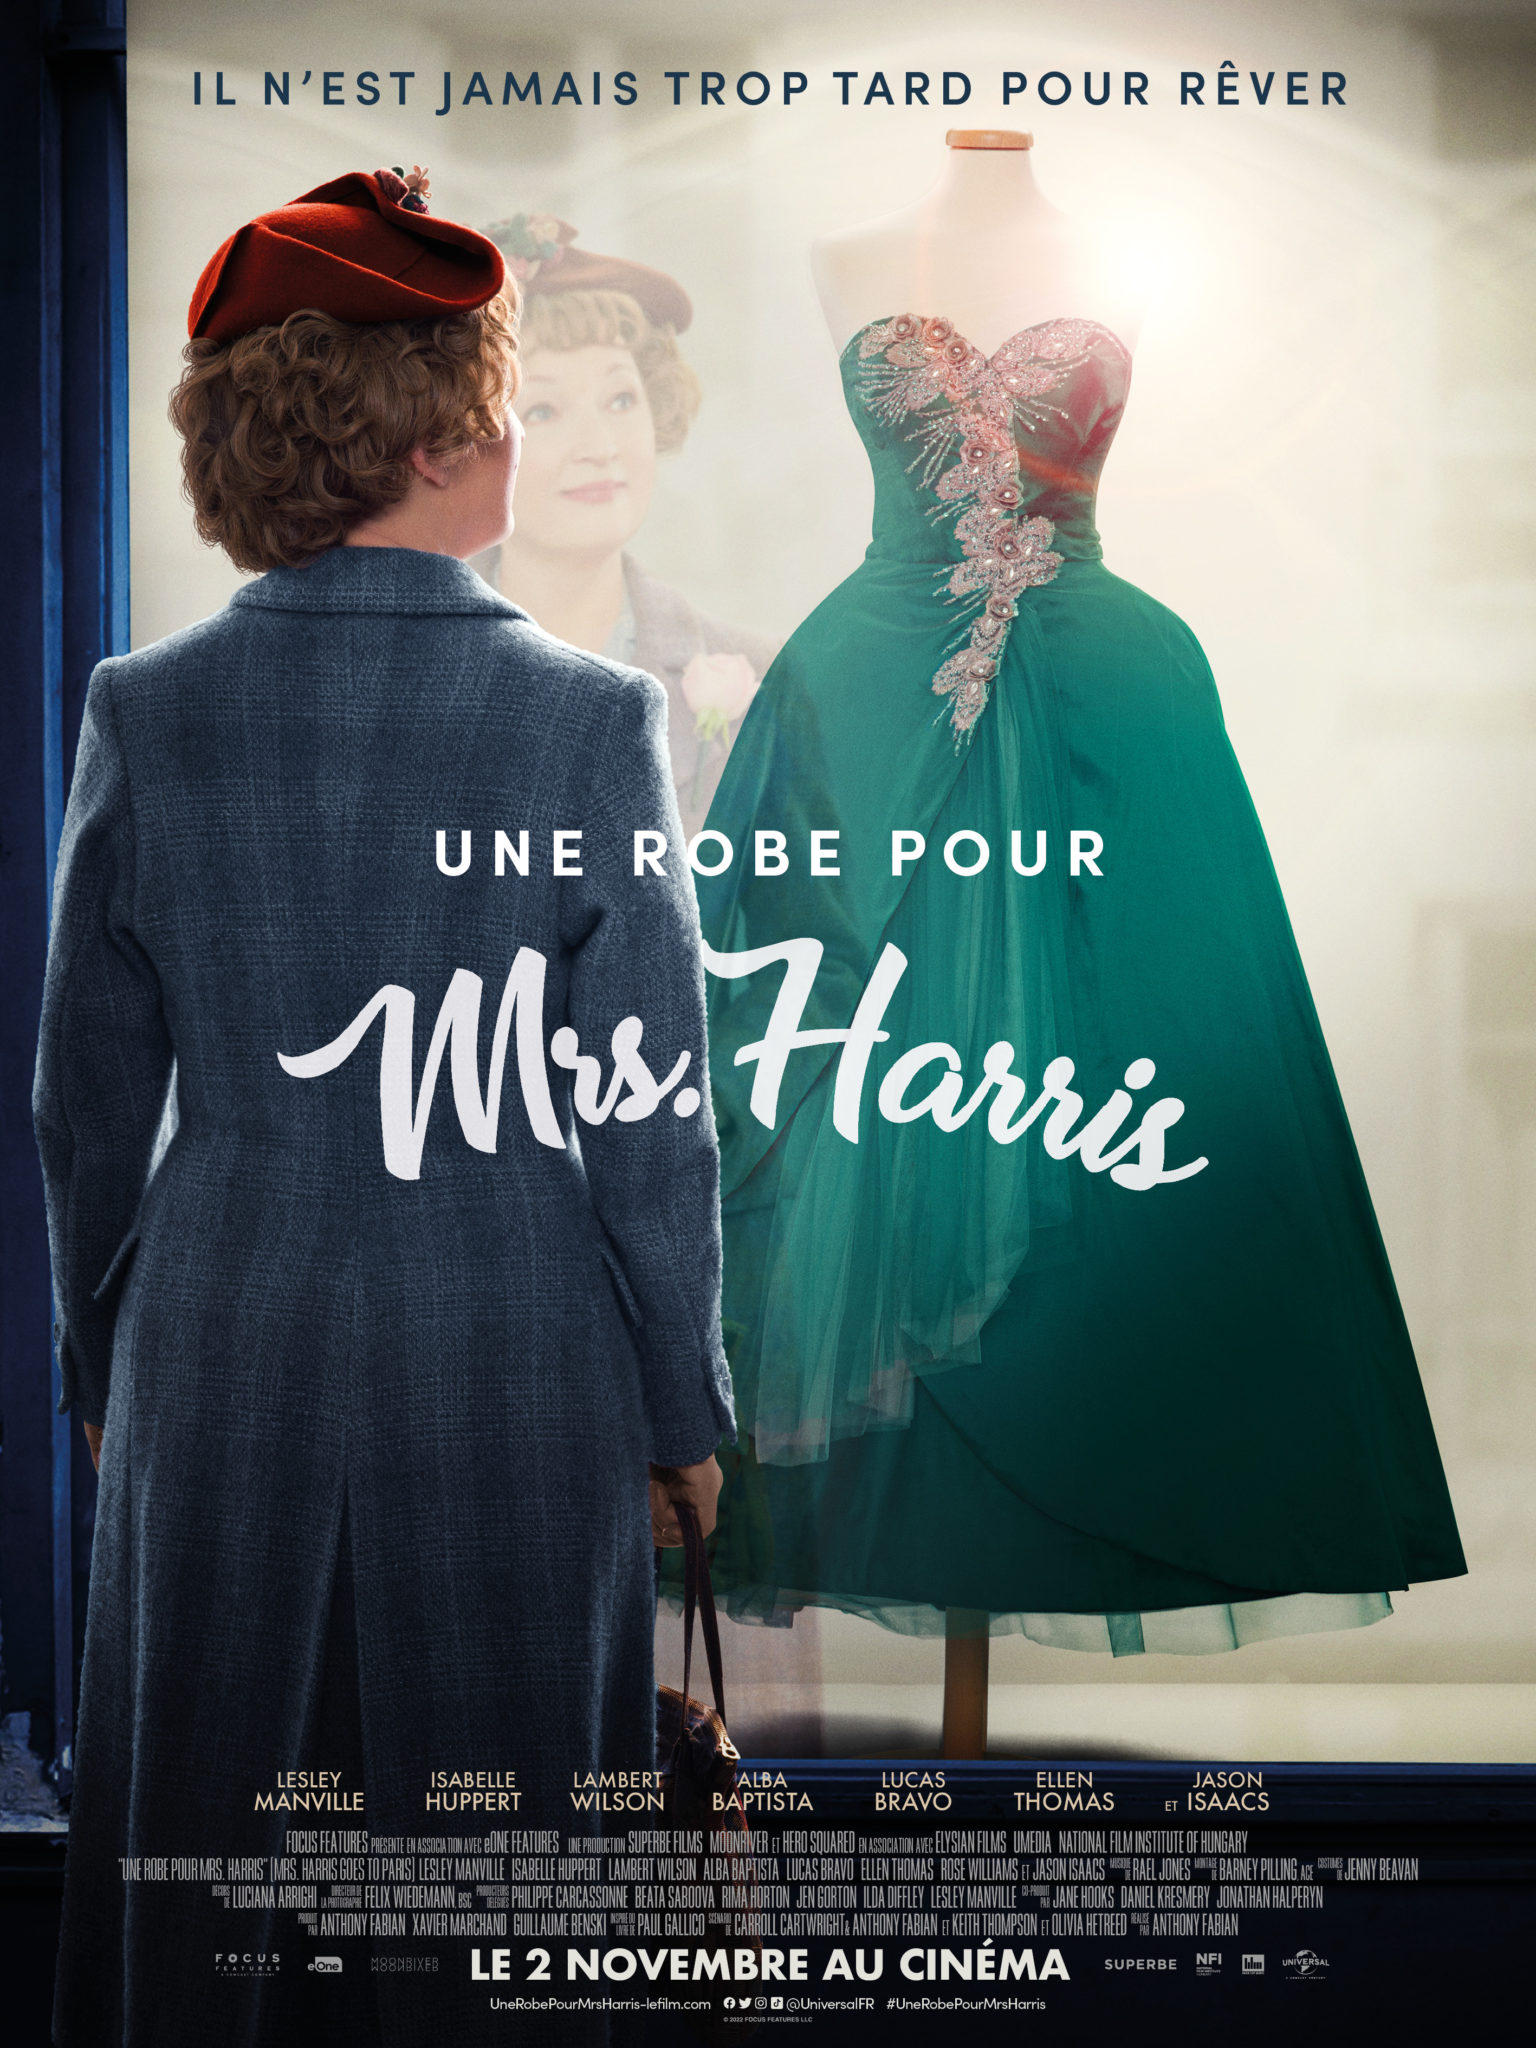 Séverine Lajarrige, attachée de presse cinéma : Une robe pour Mrs Harris